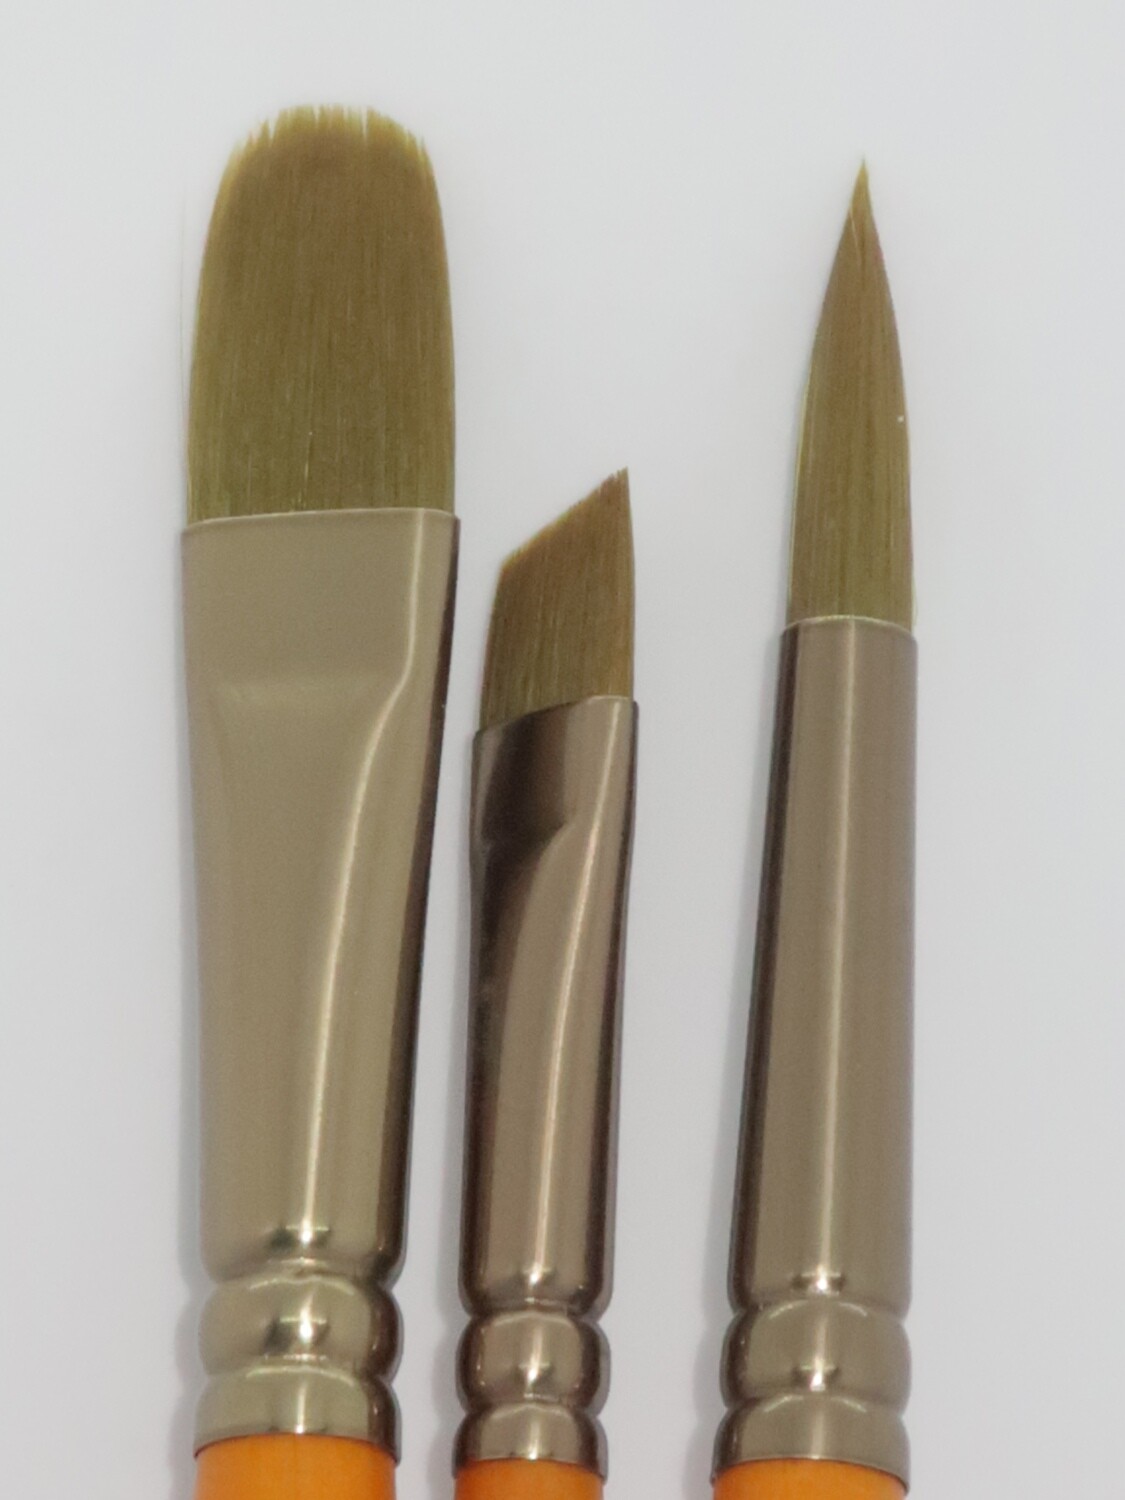 PANART GG-03 Gold Green Brushes set of 3